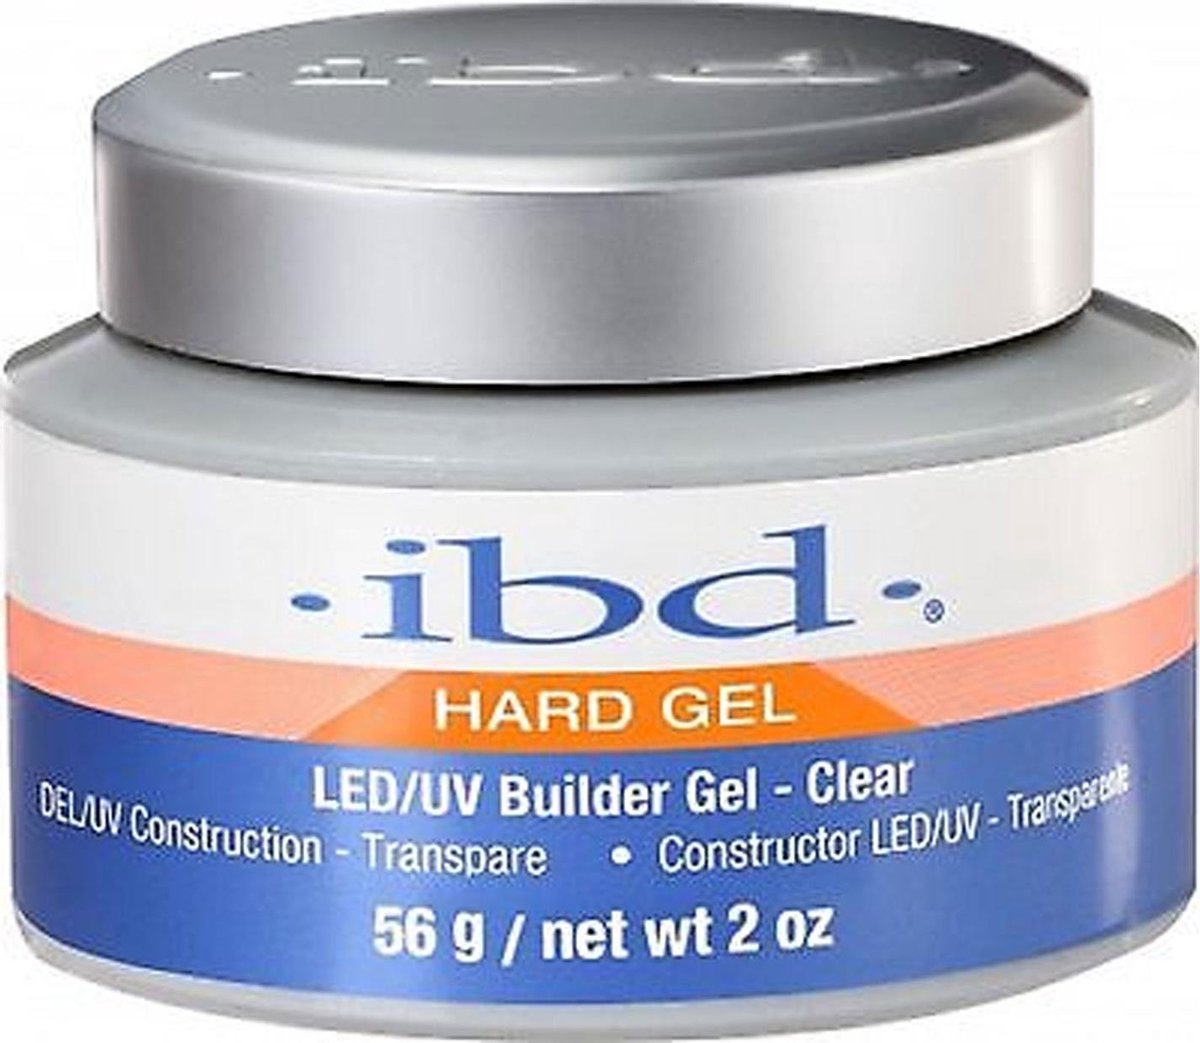 ibd - Hard Gel - LED/UV Builder Gel - Clear - 56 gr